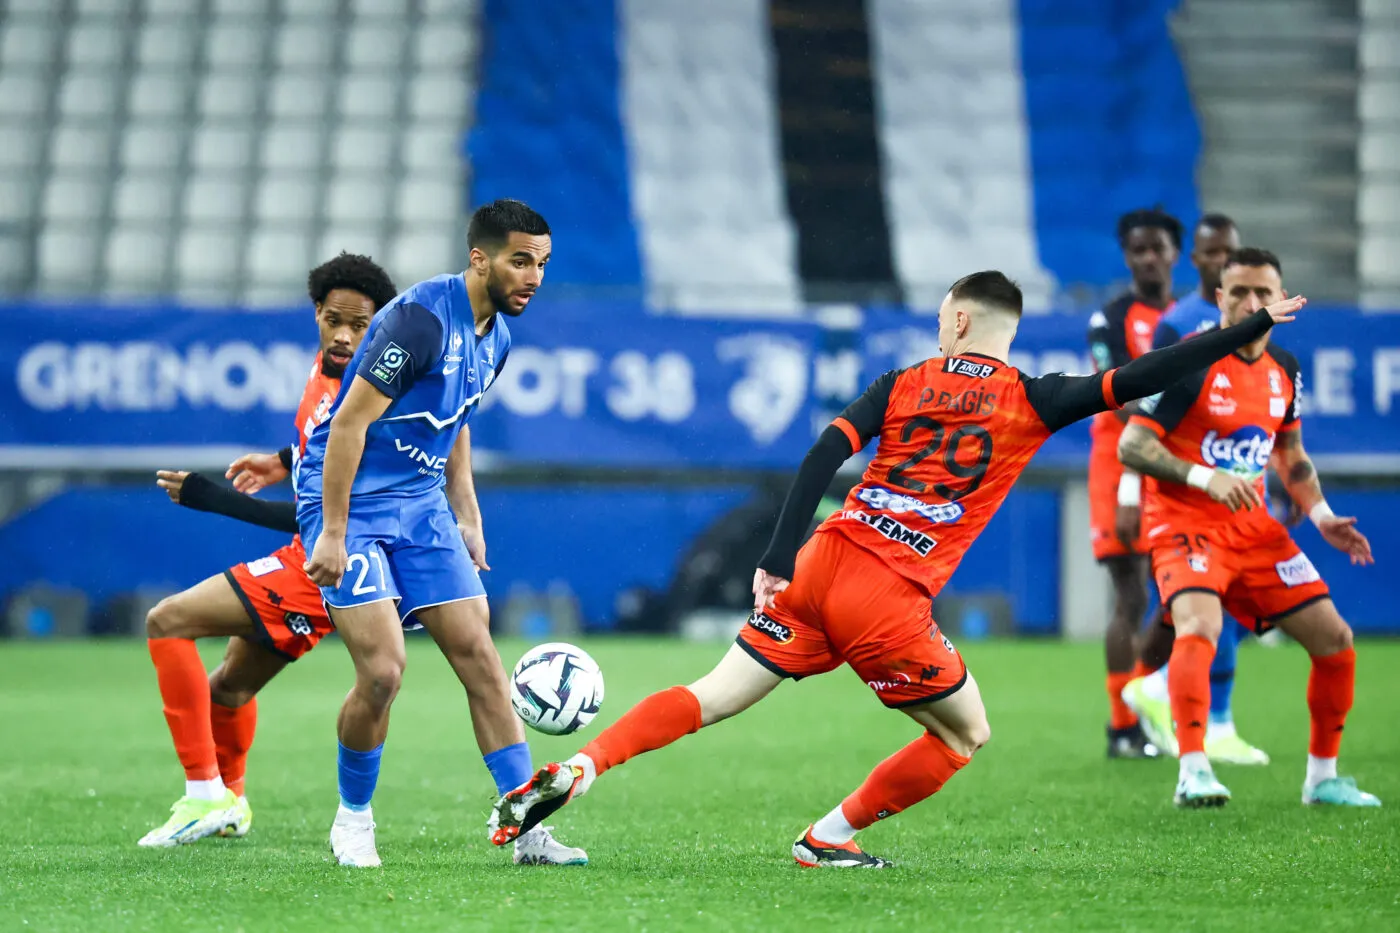 Pronostic Valenciennes Grenoble : Analyse, cotes et prono du match de Ligue 2